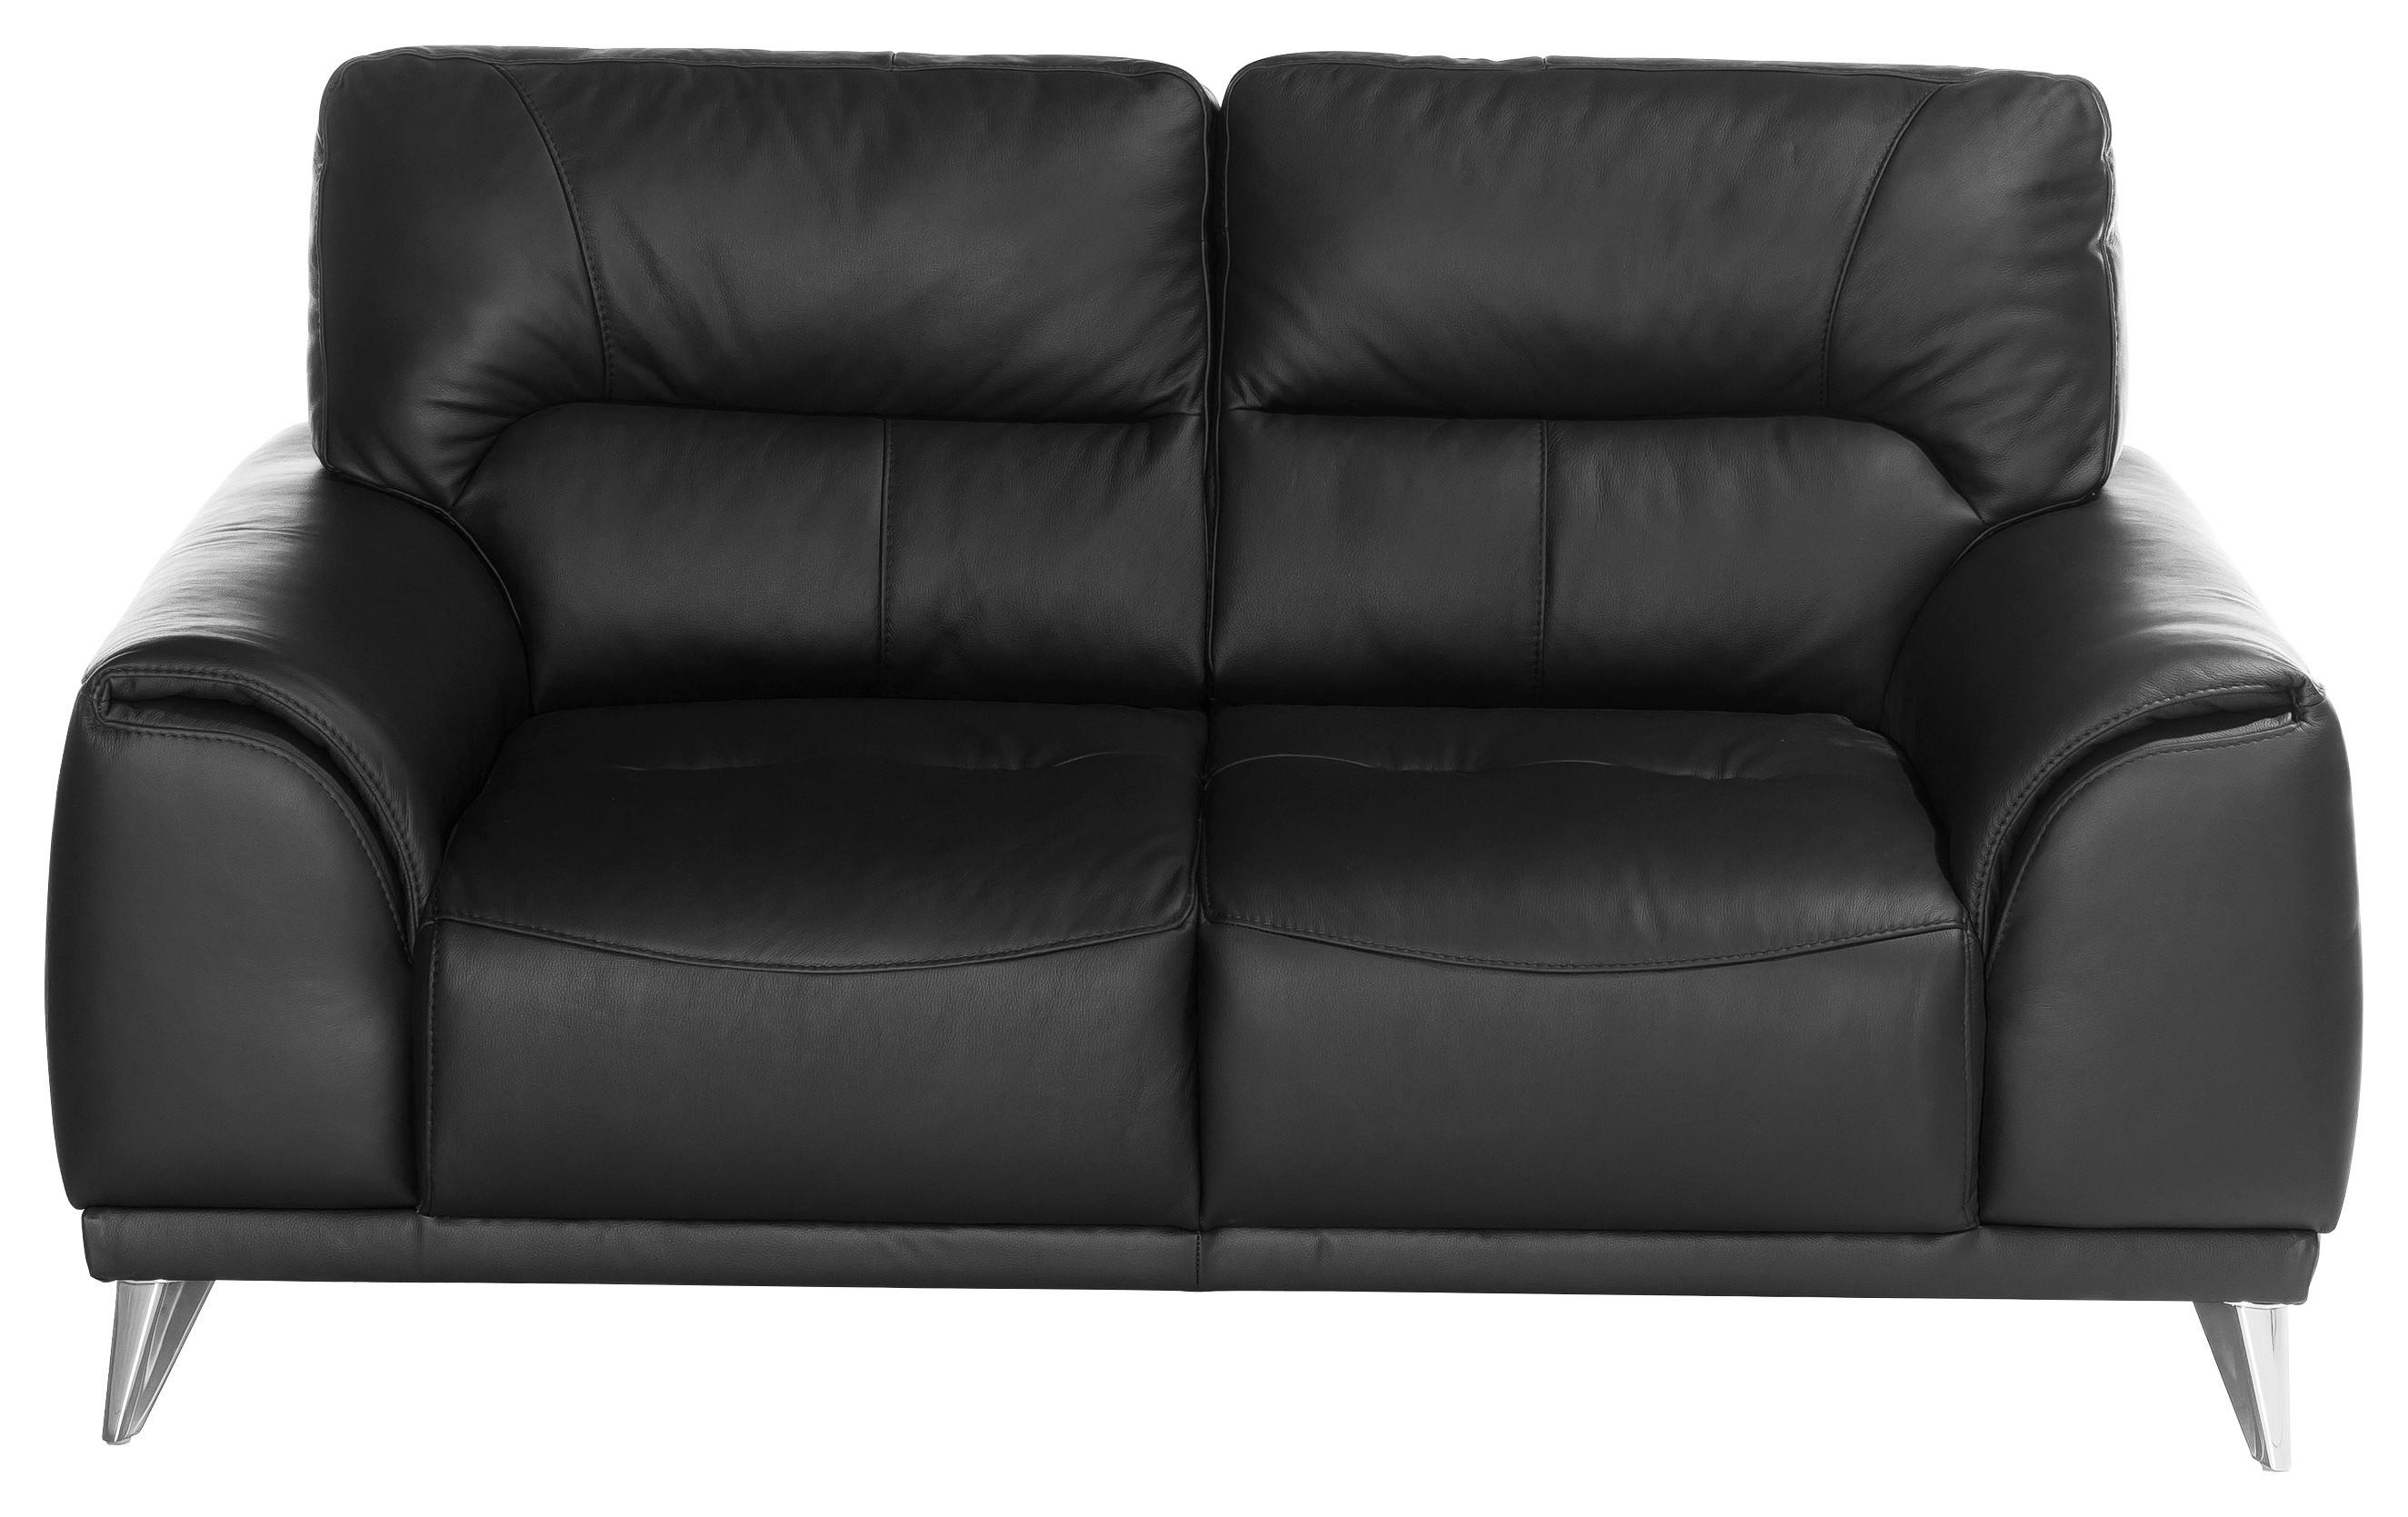 Zweisitzer-Sofa "Frisco" , schwarz - Chromfarben/Schwarz, MODERN, Textil/Metall (166/92/96cm) - MID.YOU